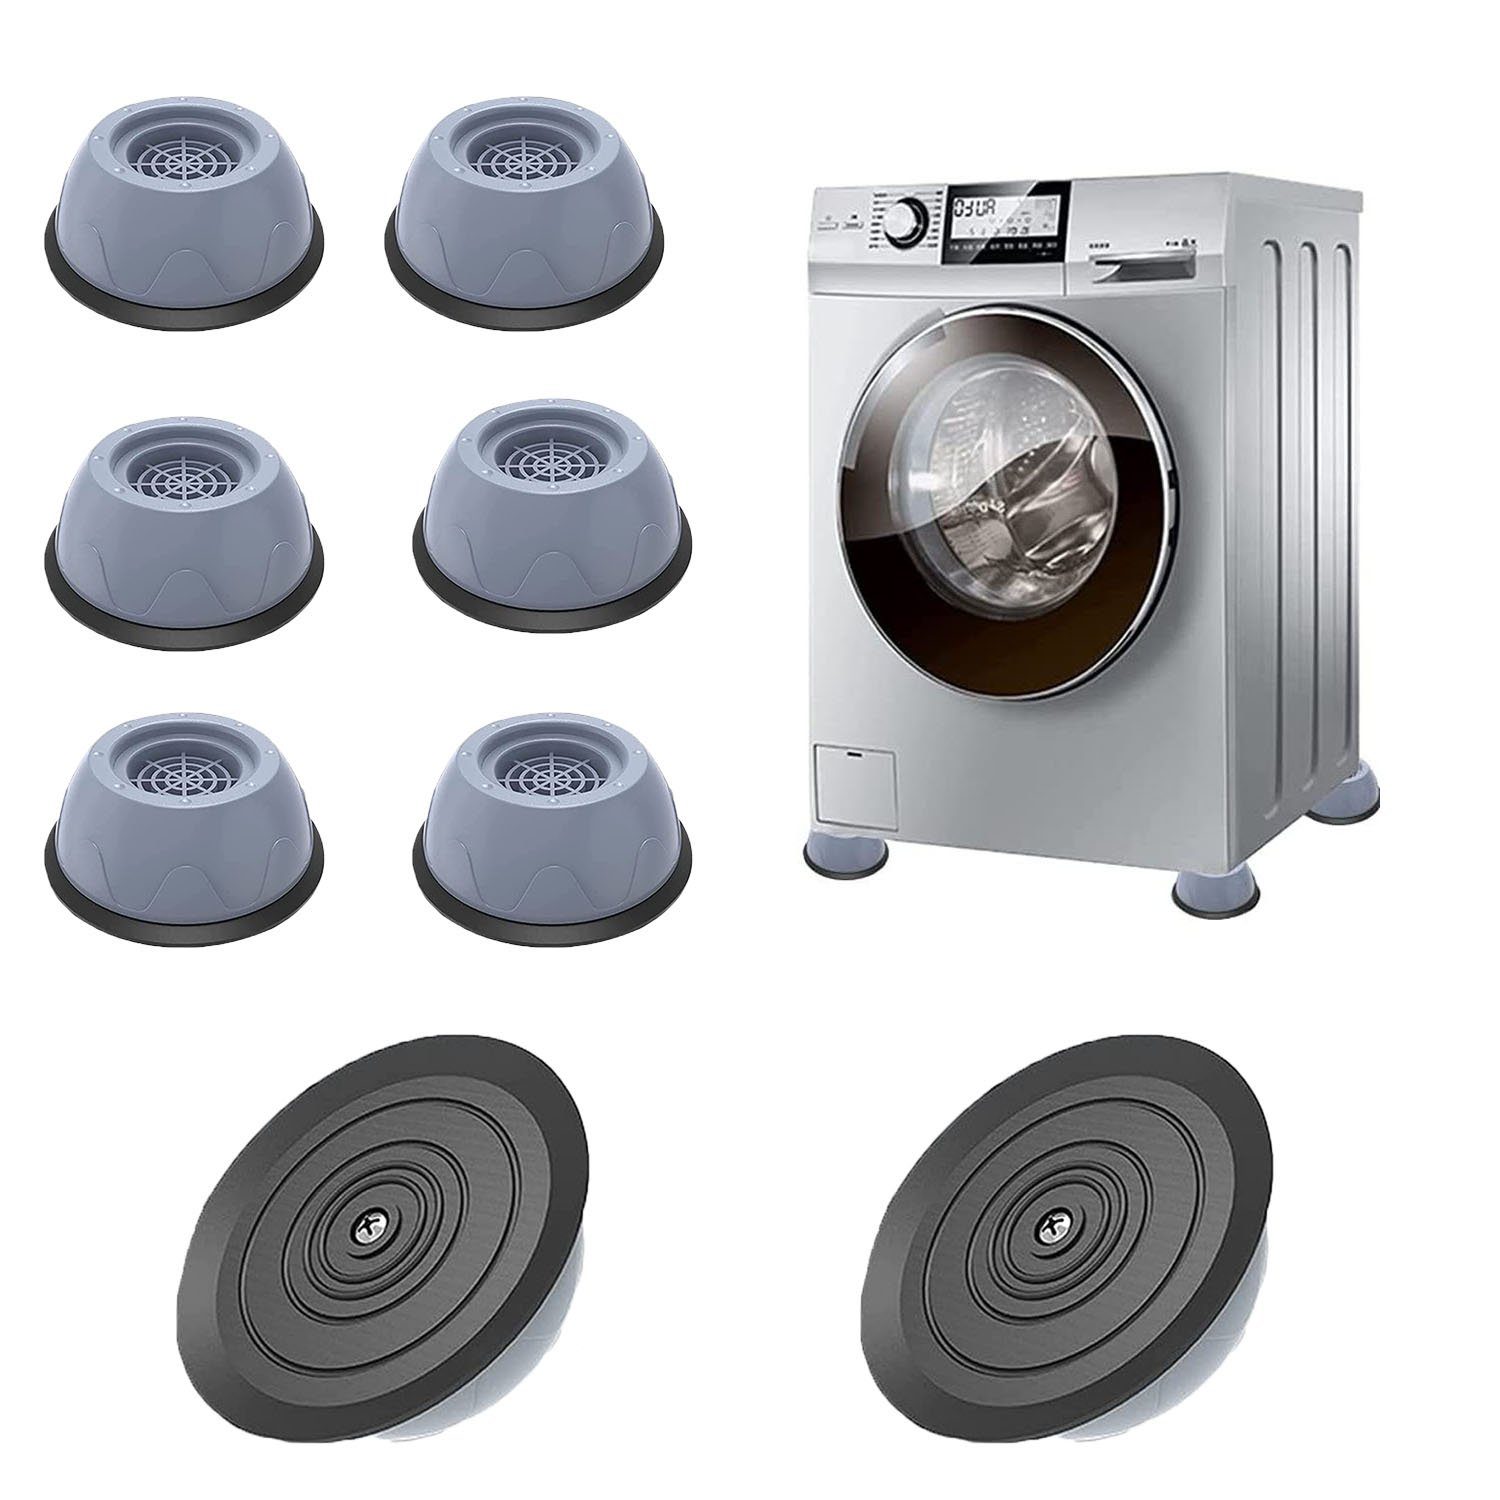 TTAototech Waschmaschine Anti-Vibrations-Pad Waschmaschine Fußpolster Anti-Walk Anti-Schock-Pad Erhöhen Die Höhe Geräuschreduzierung 